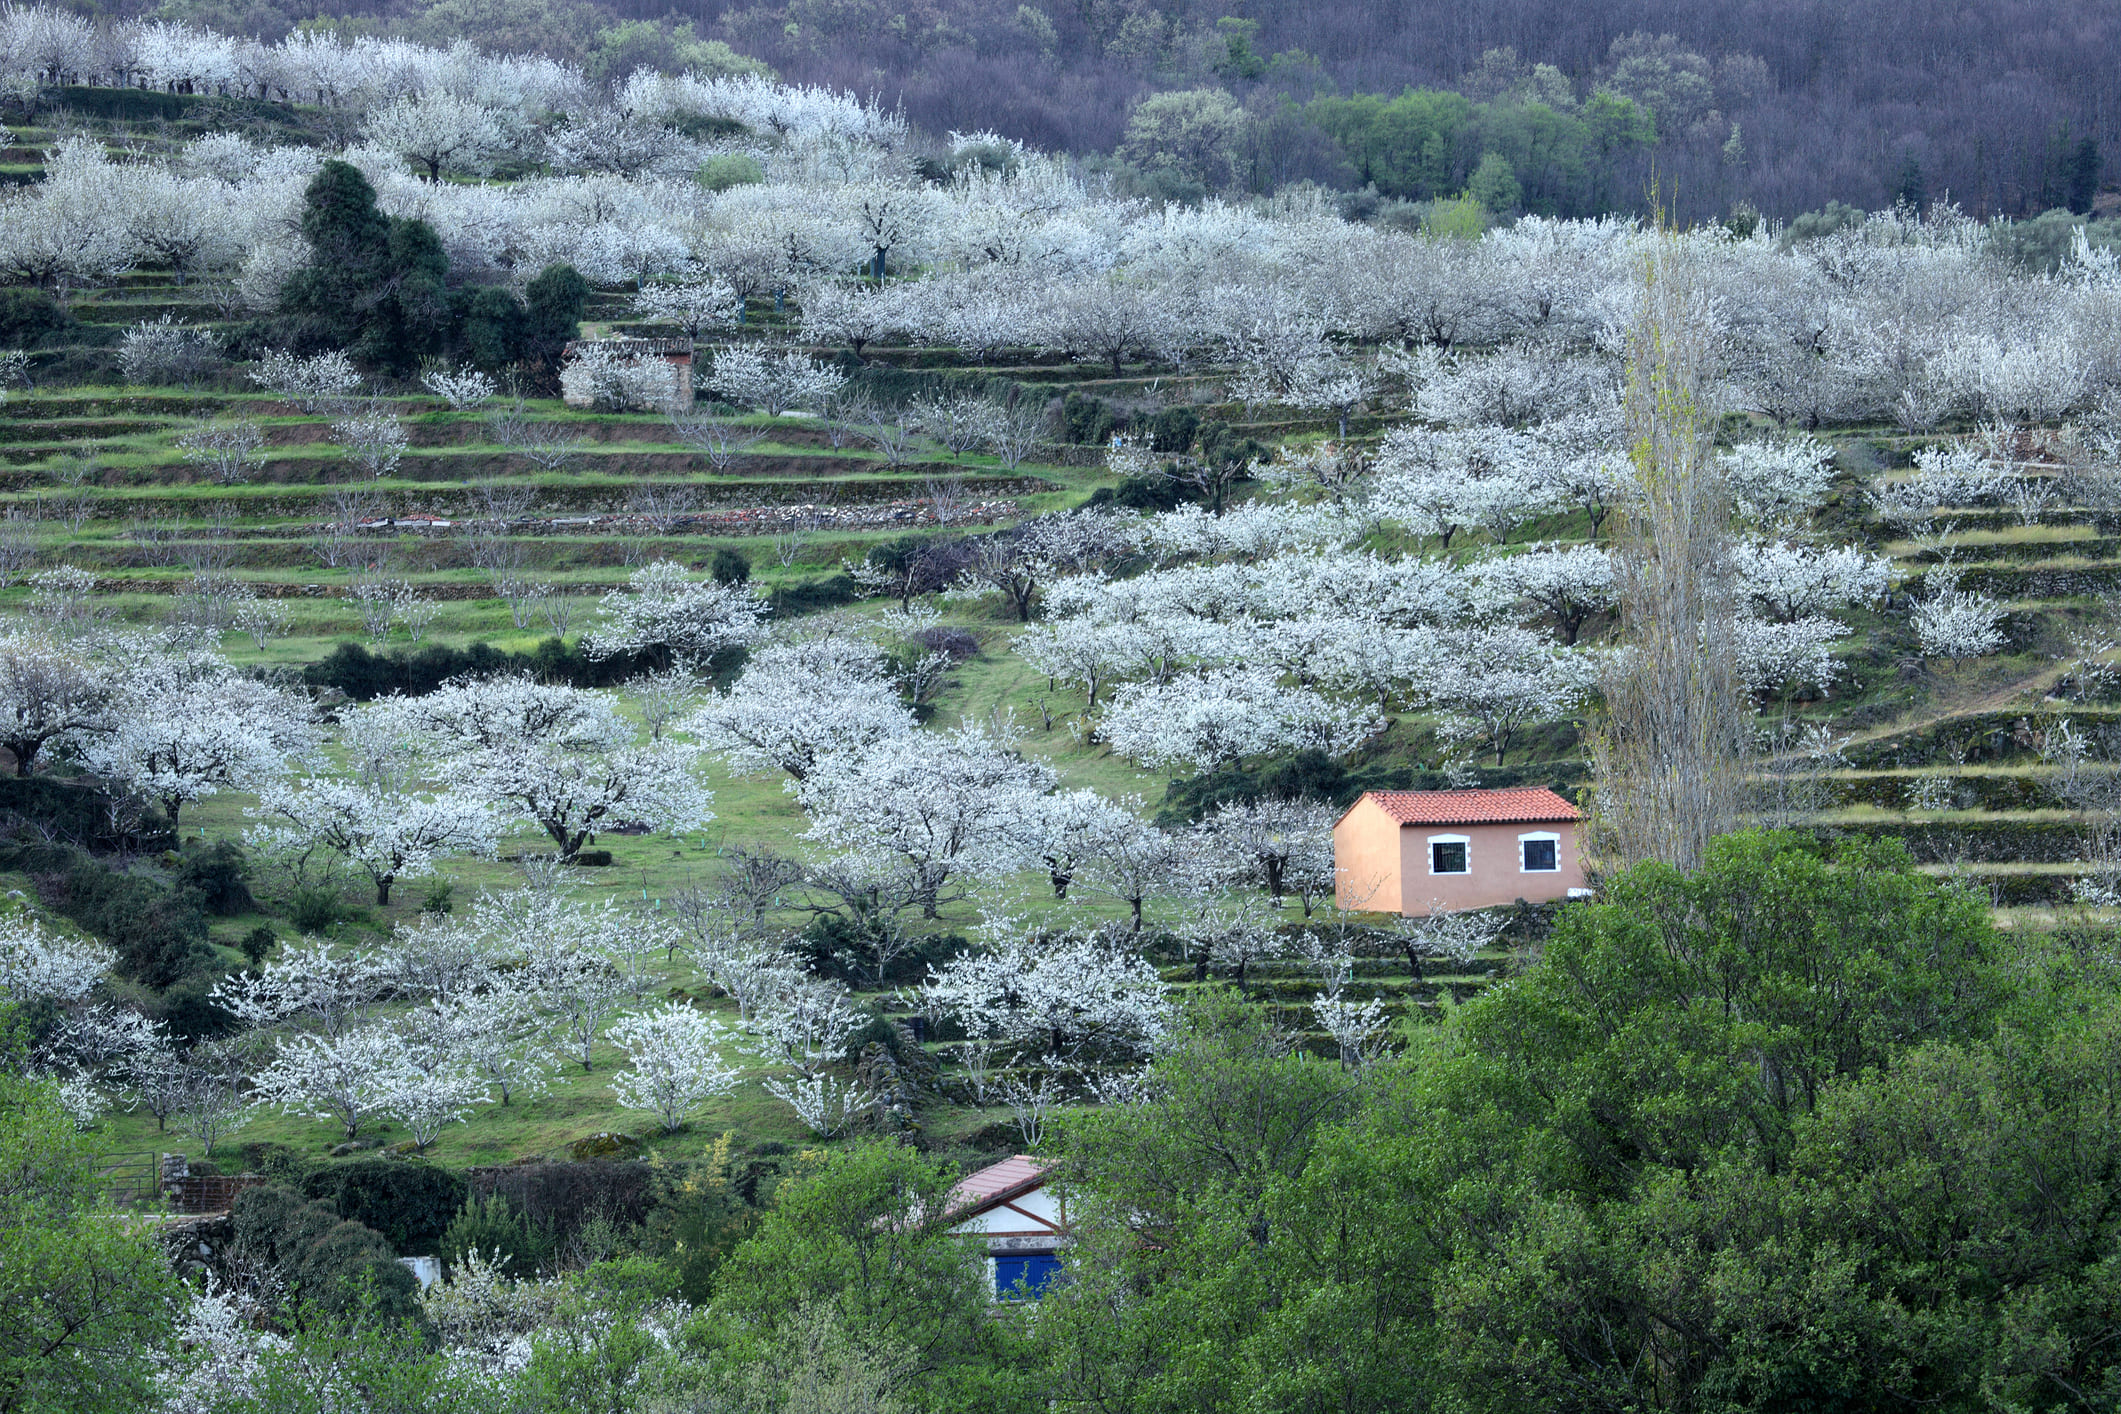 Los cerezos en flor del Jerte son un bonito paisaje a contemplar esta Semana Santa.